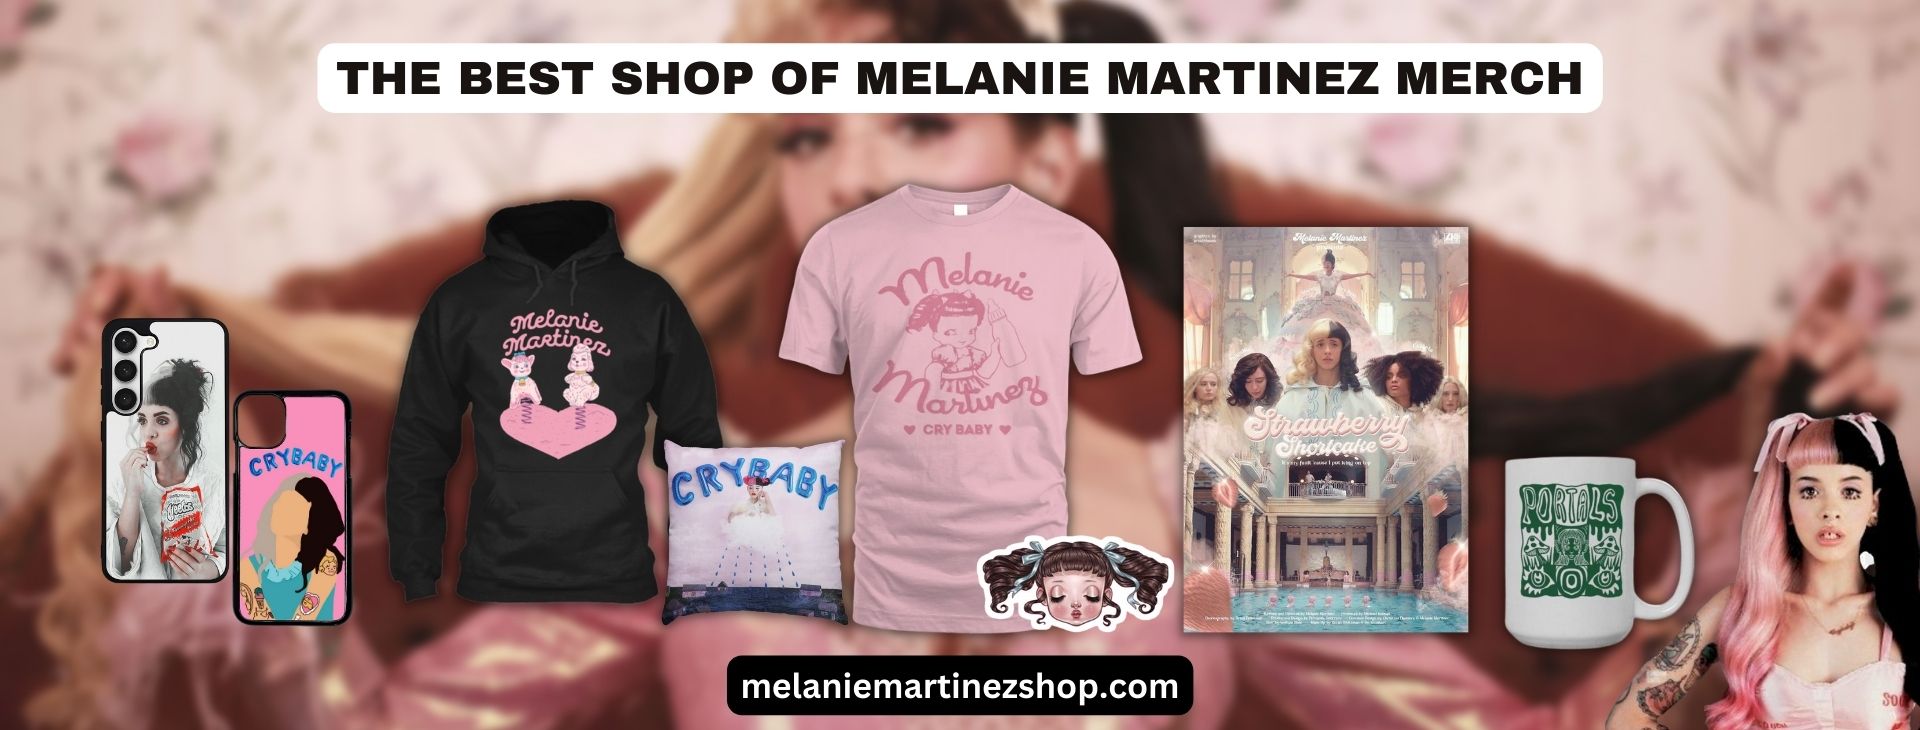 No edit melanie martinezs Banner - Melanie Martinez Merch